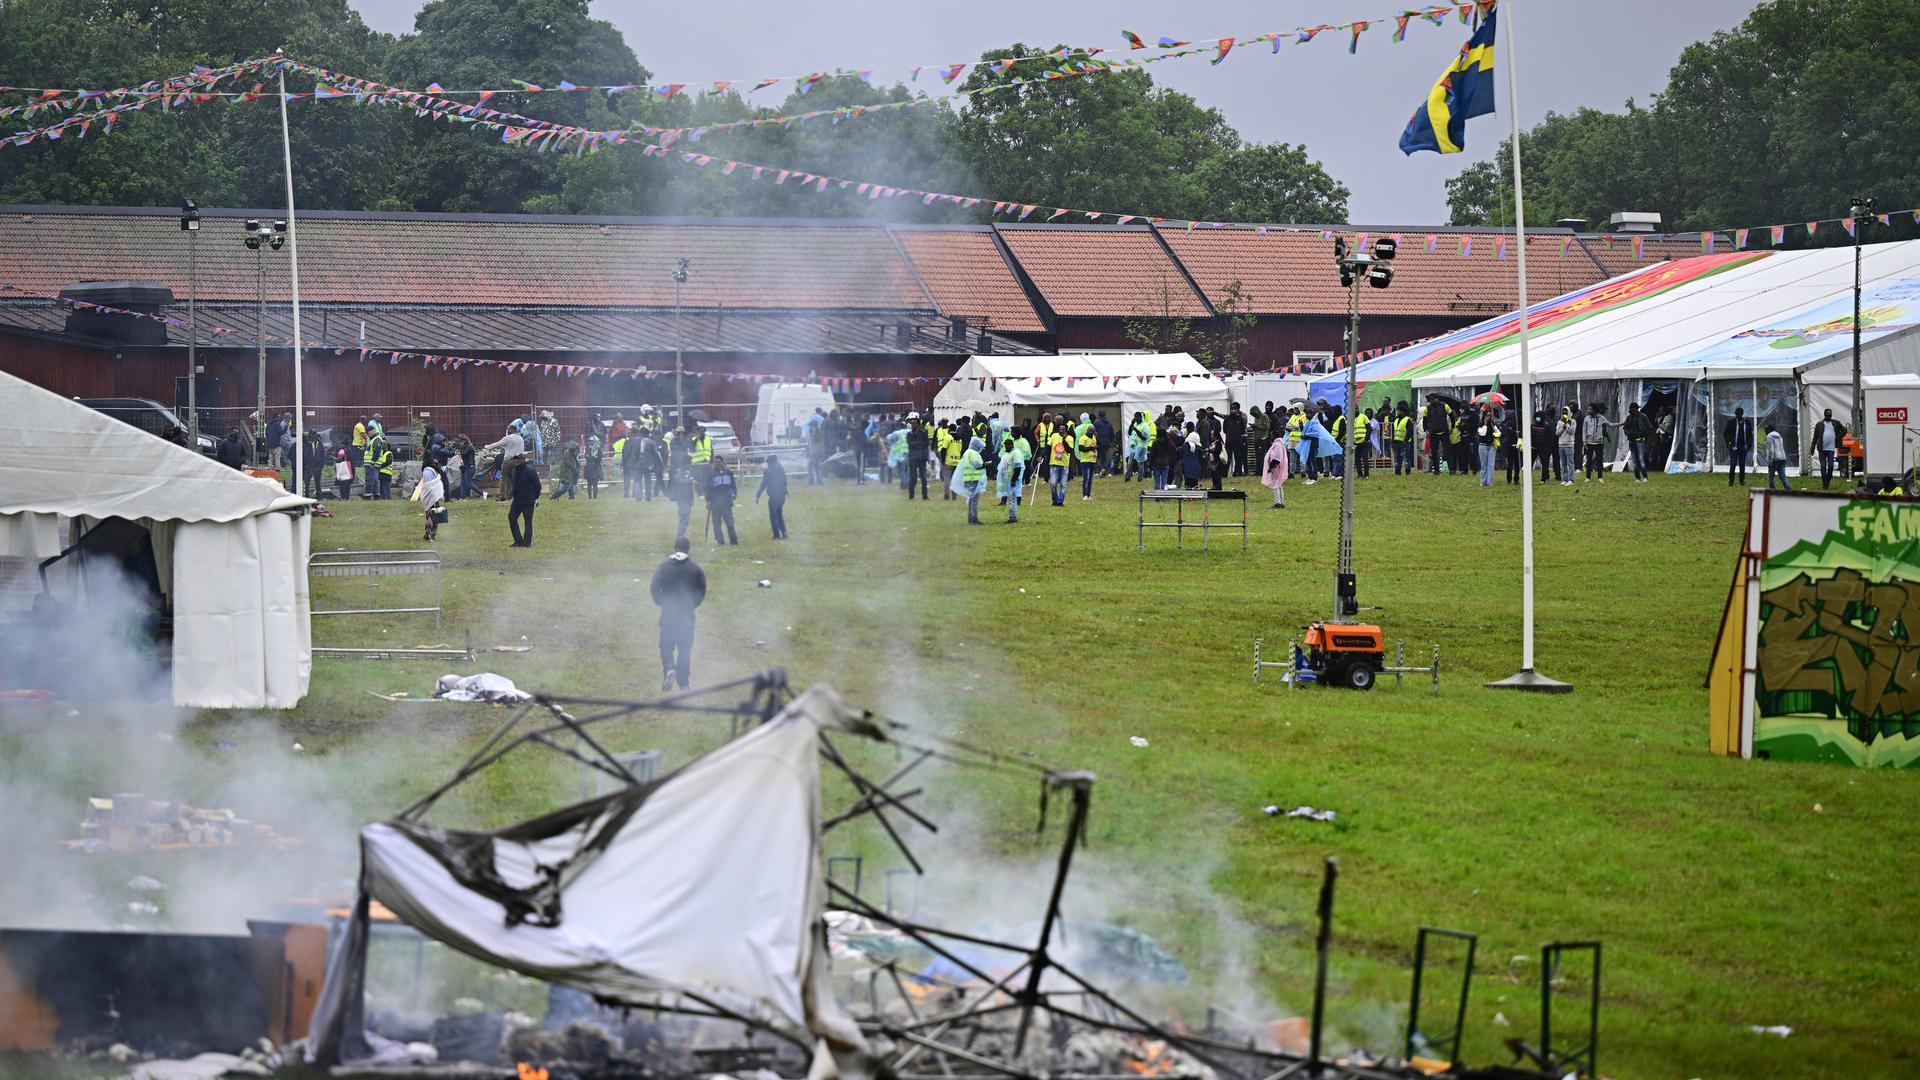 Auf einer Festwiese sind im Hintergrund Menschen zu sehen; im Vordergrund steigt von zerstörter Einrichtung Rauch auf. Eine schwedische Fahne weht an einem Mast.